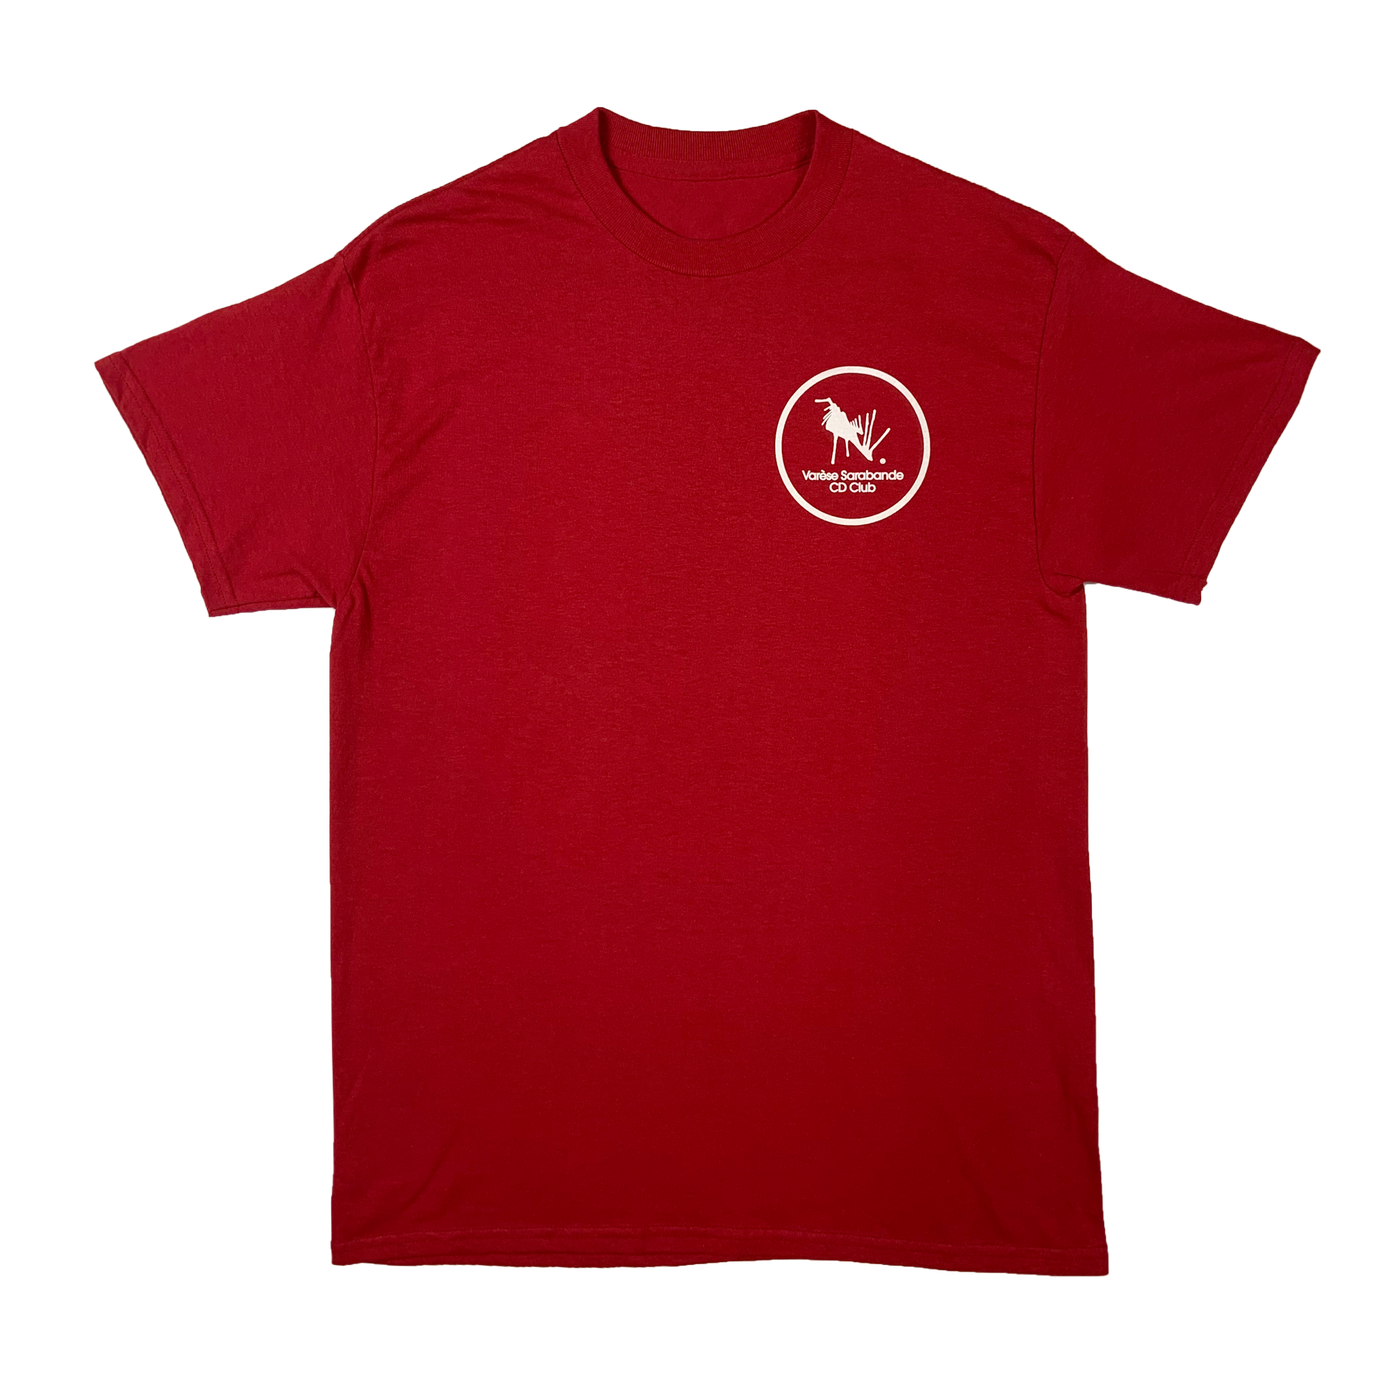 CD Club T-Shirt (Red)